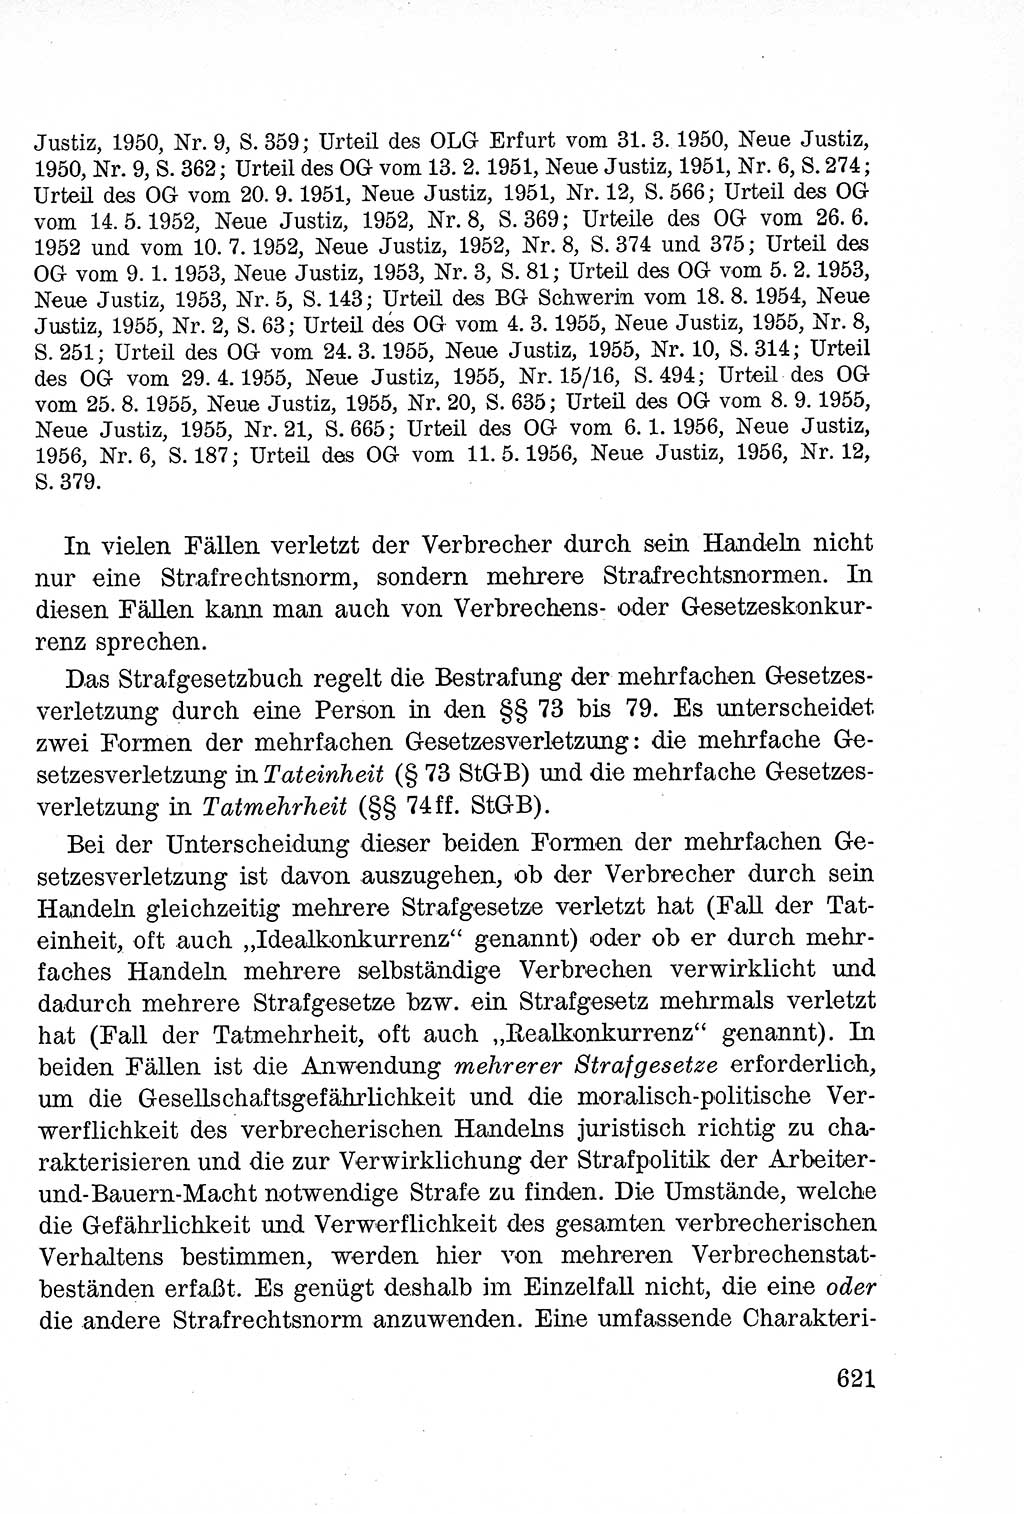 Lehrbuch des Strafrechts der Deutschen Demokratischen Republik (DDR), Allgemeiner Teil 1957, Seite 621 (Lb. Strafr. DDR AT 1957, S. 621)